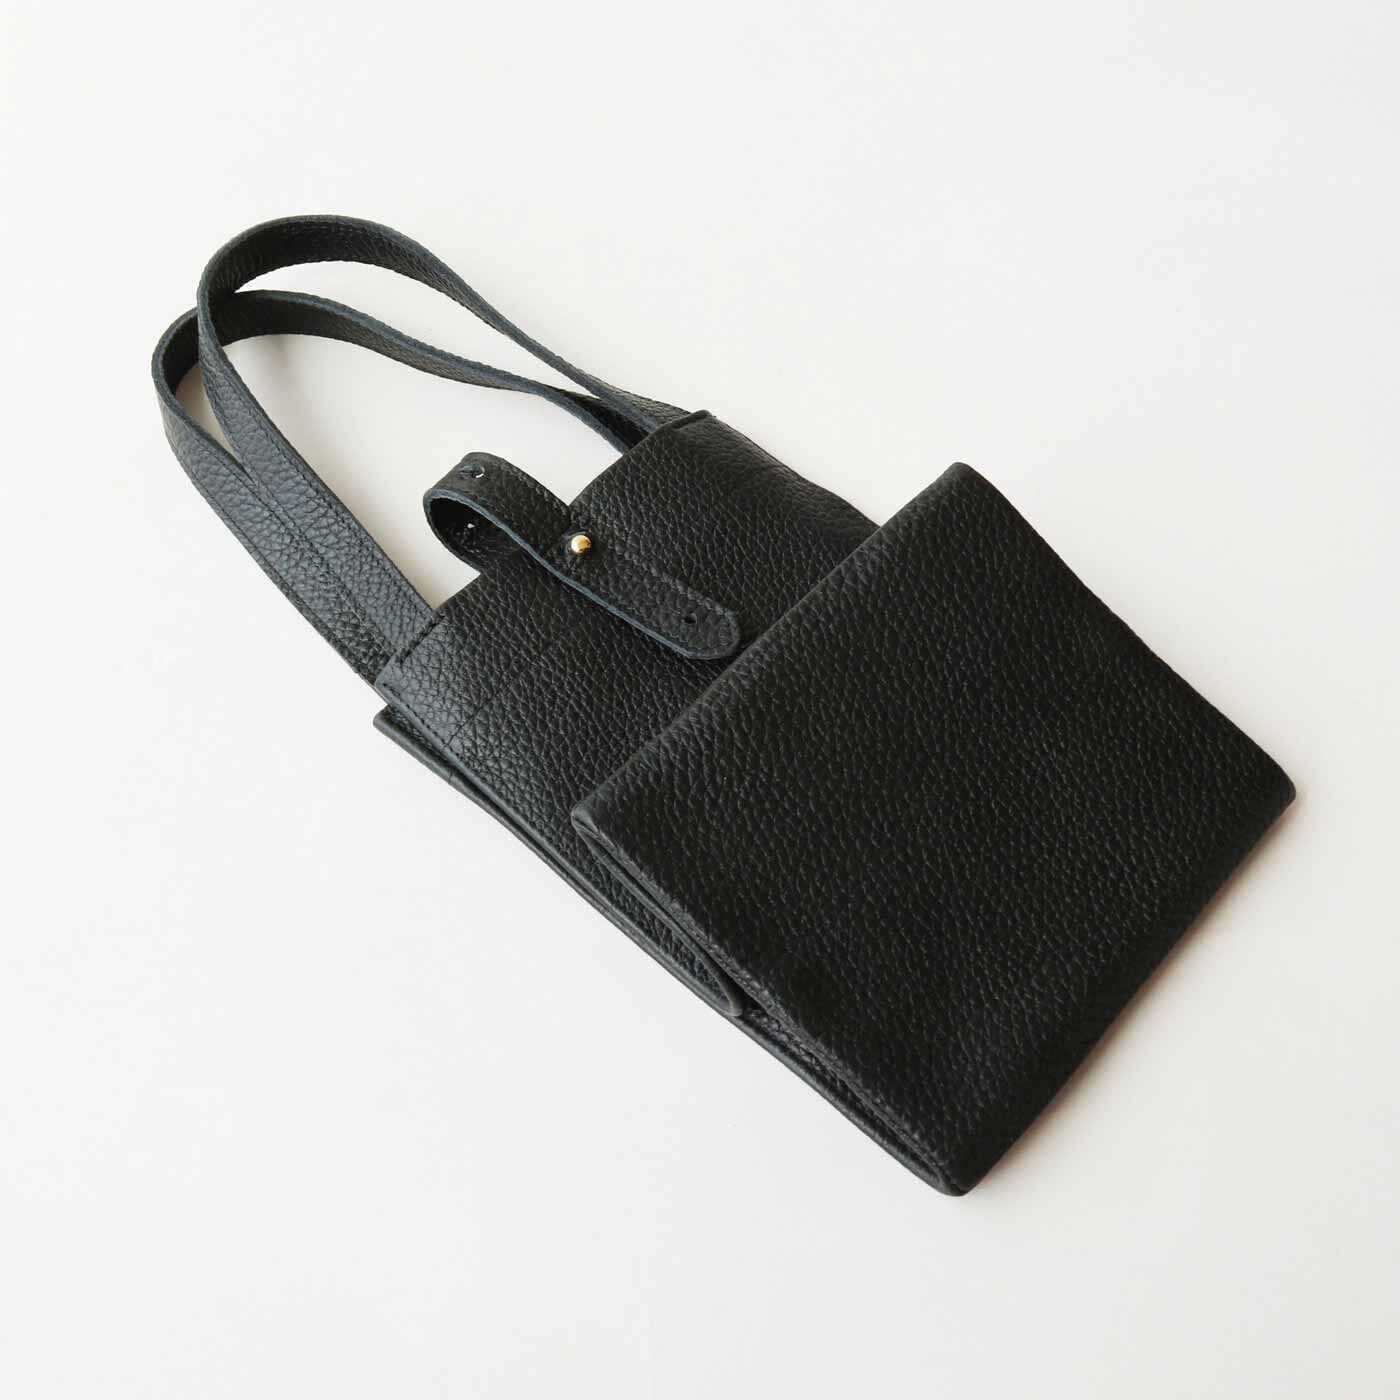 ＆Stories|福岡の鞄作家が作った 職人本革のミルクボトルトートバッグ〈ブラック〉|平たくたためるので、旅先のサブバッグに持って行っても。